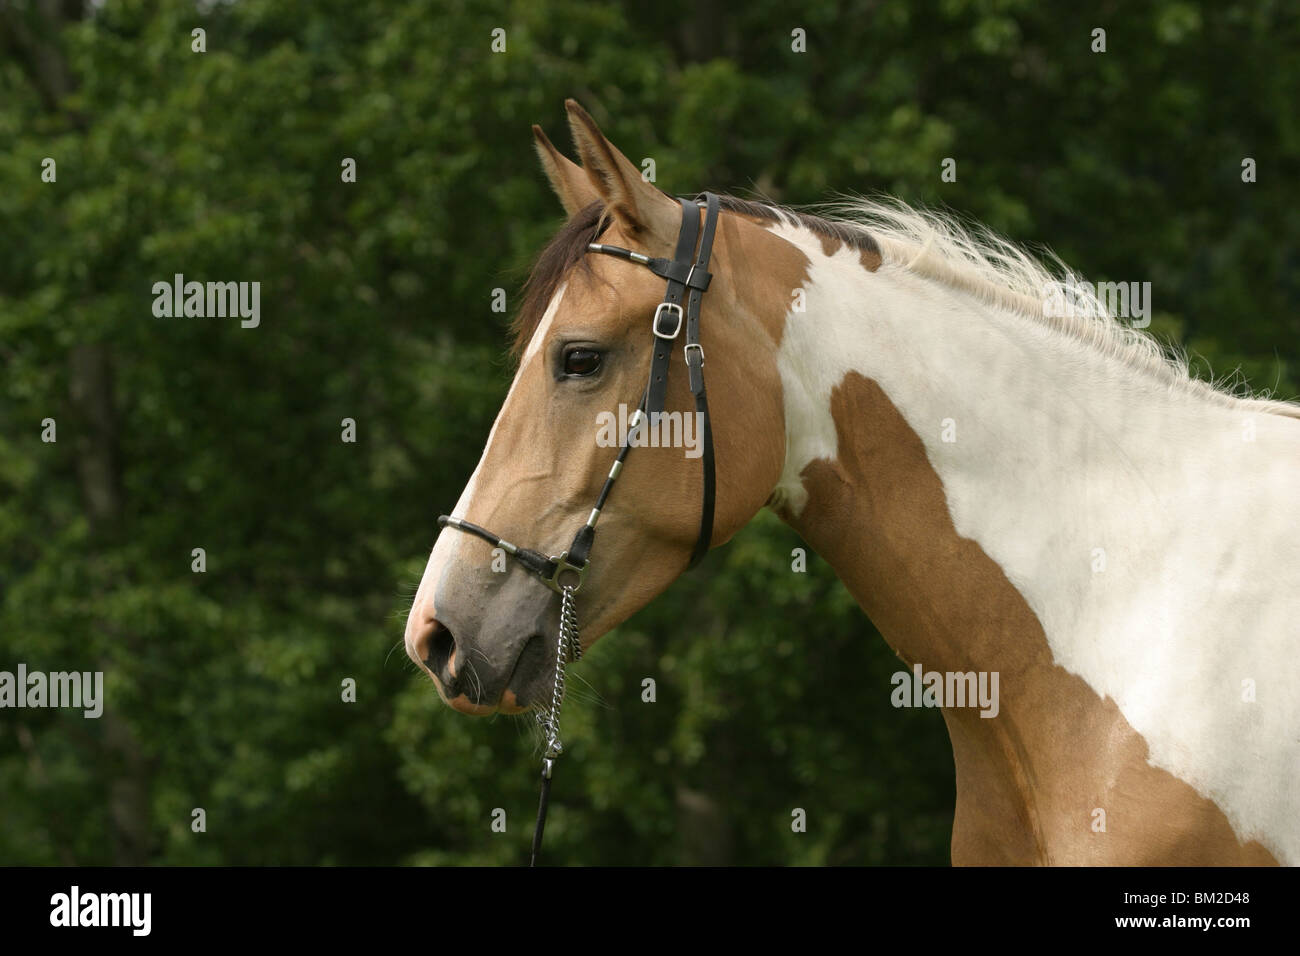 Araberpaint Portrait / horse head Stock Photo